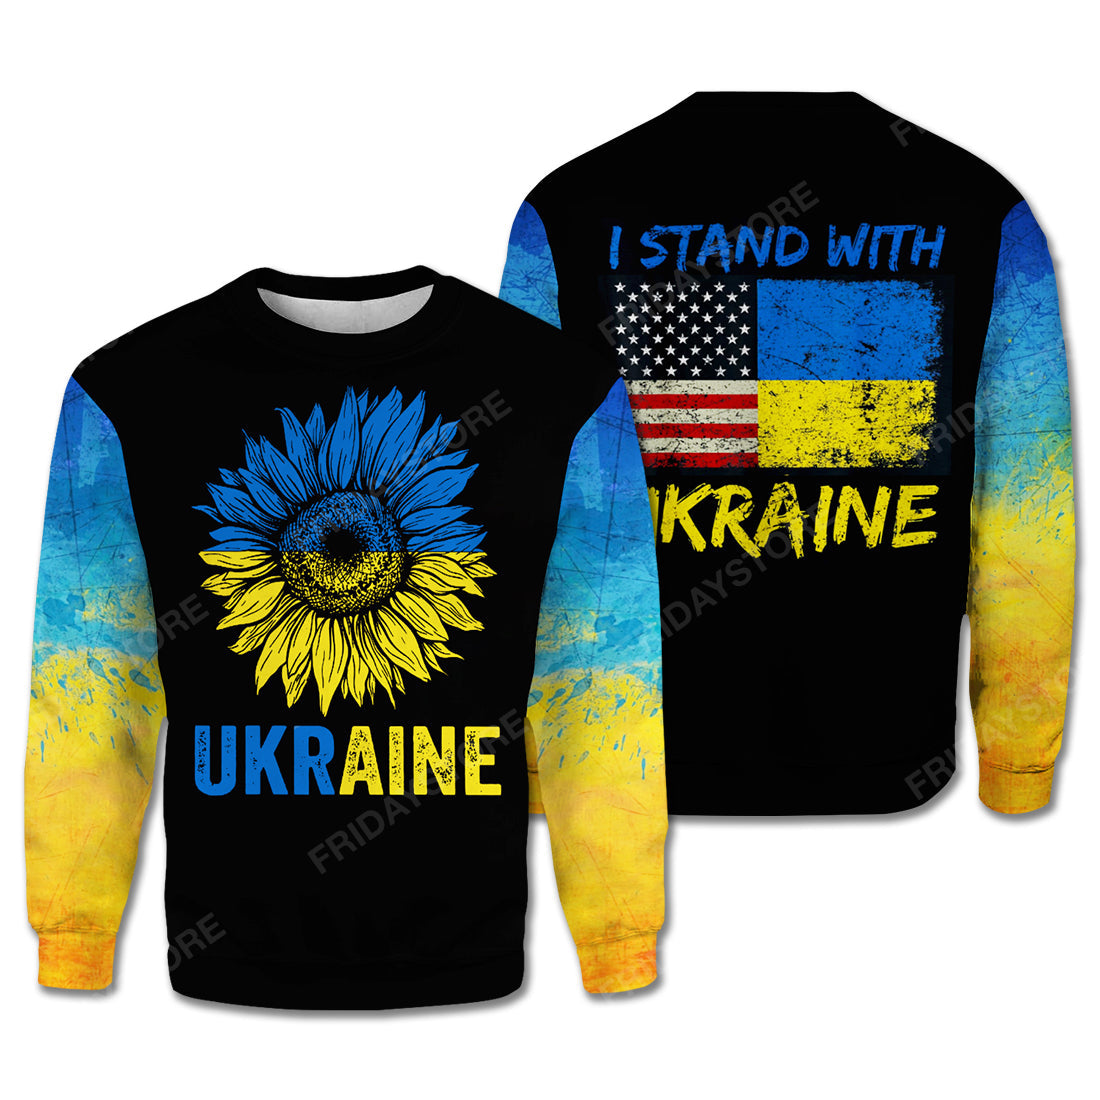 Ukraine T Shirt I Stand With Ukraine Yellow Blue Black Hoodie Ukraine Hoodie